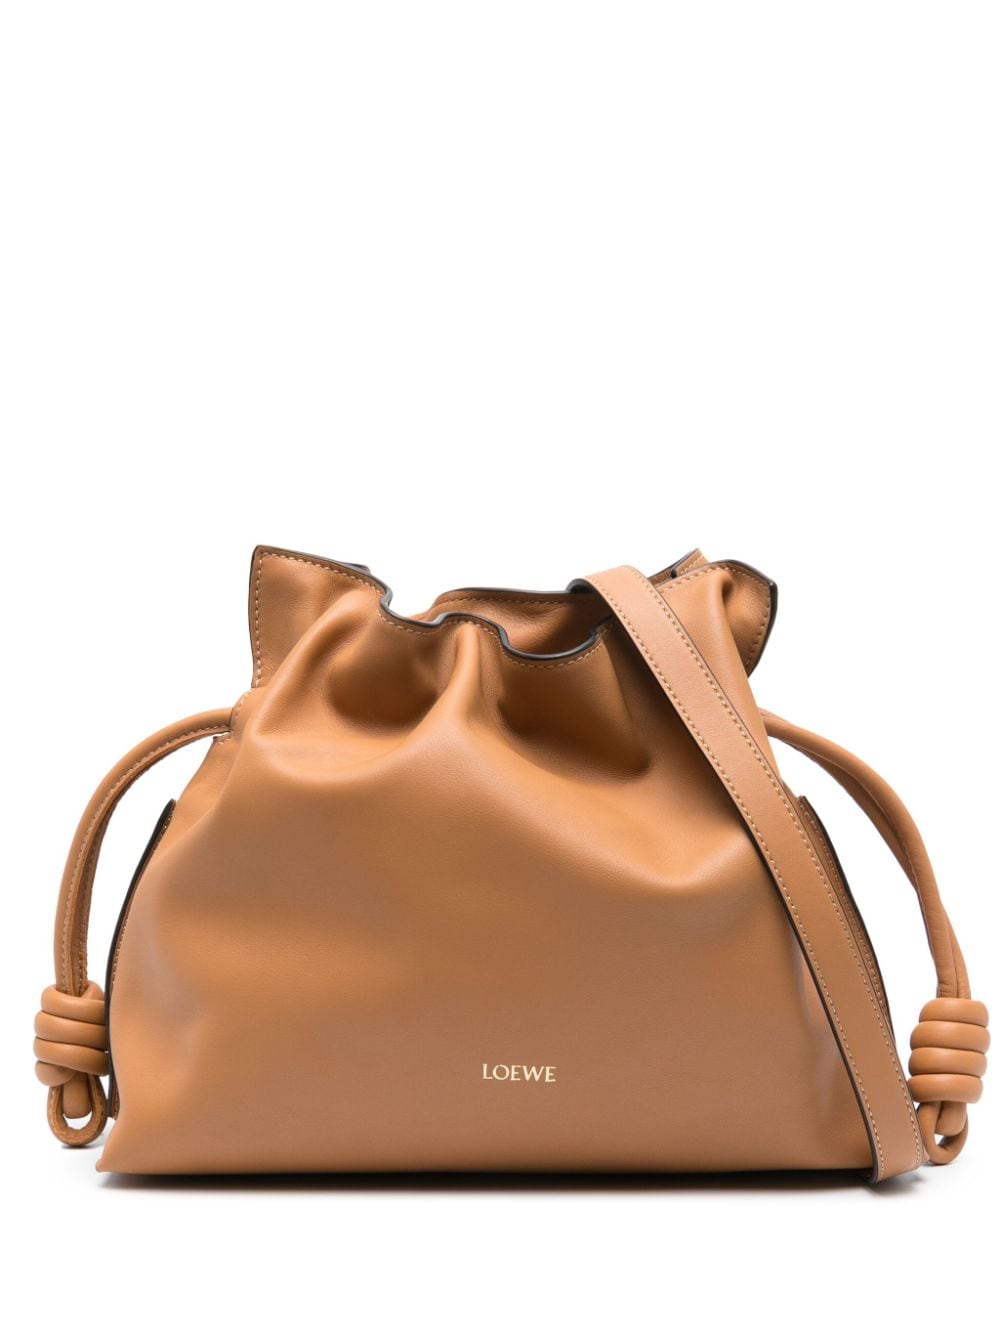 LOEWE Flamenco leather clutch bag - Brown von LOEWE